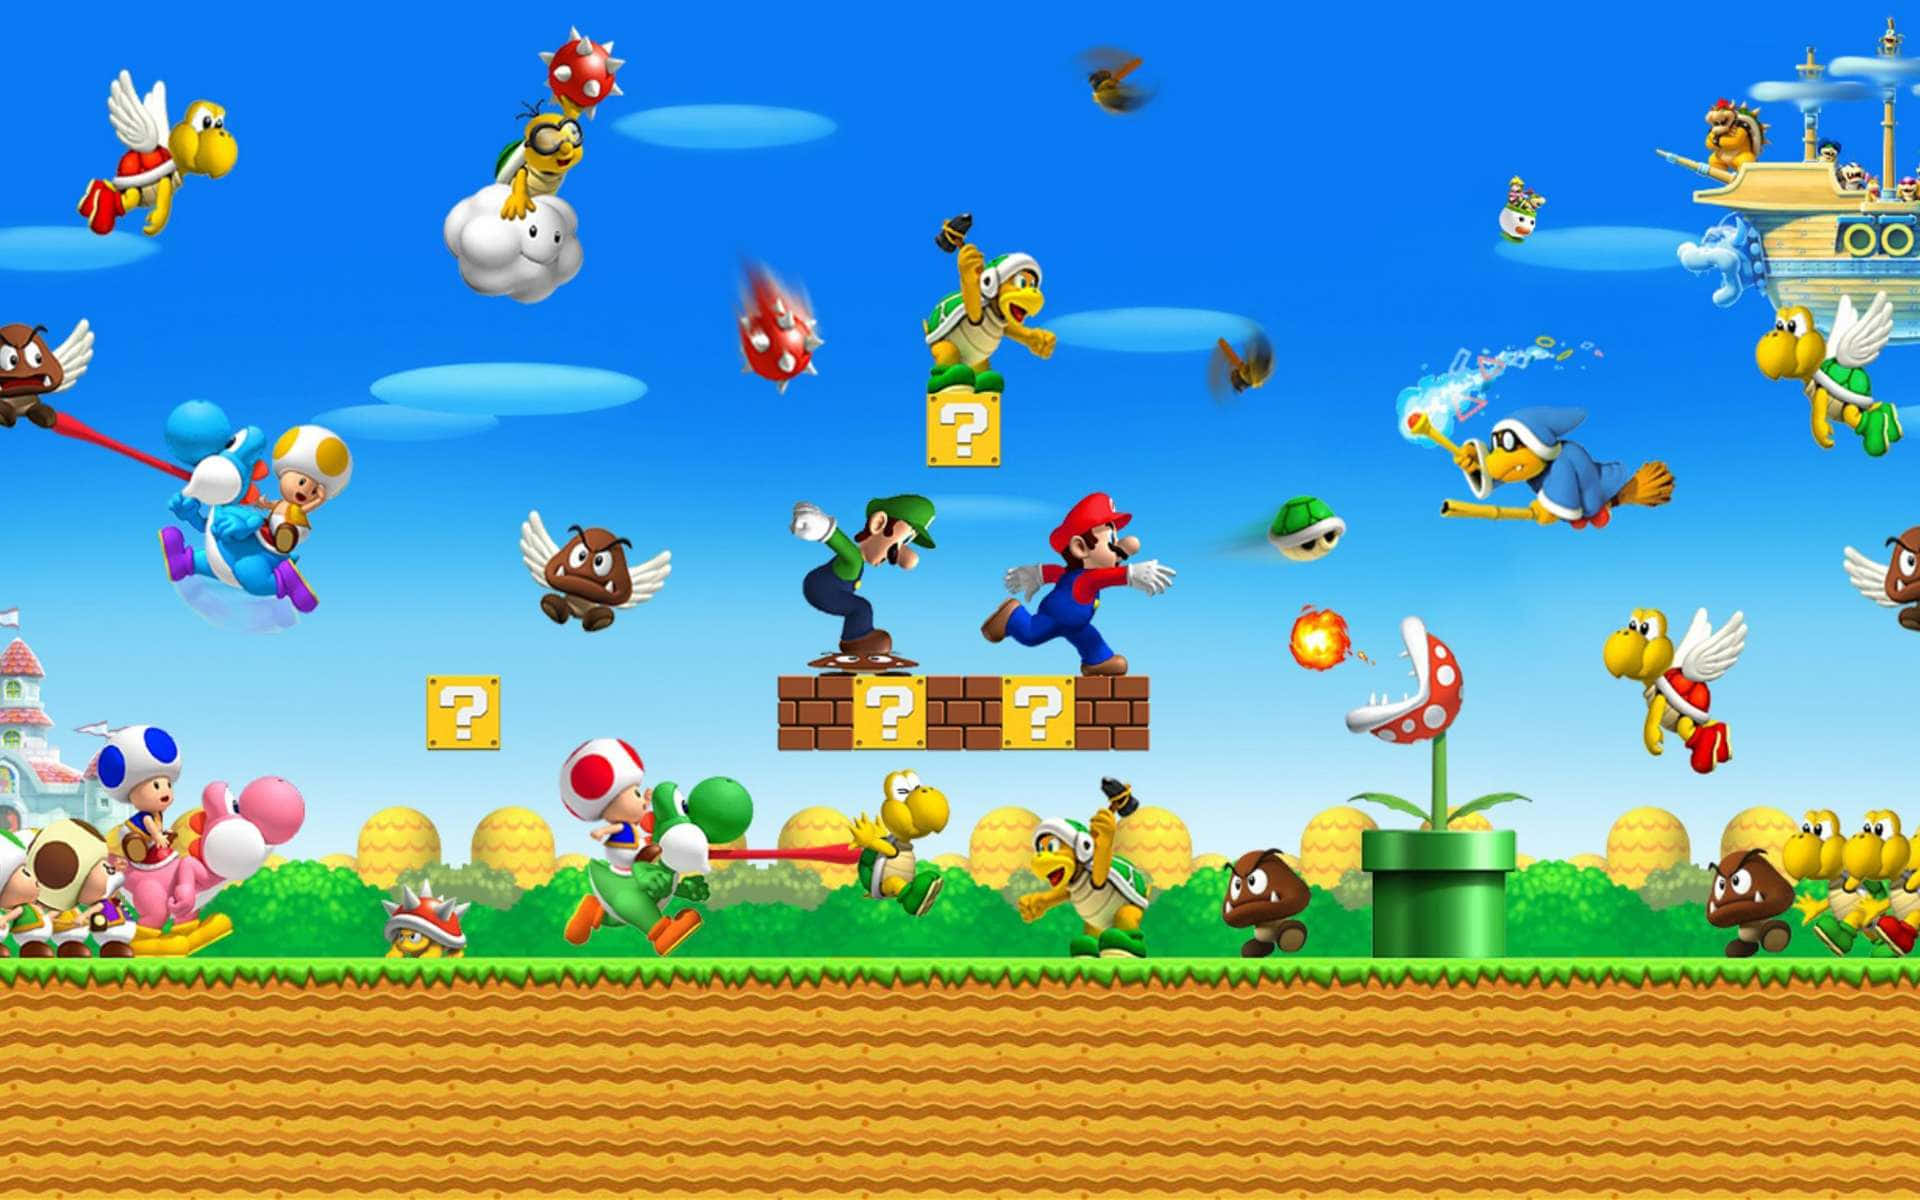 Enklassisk Videospilskarakter Fra Super Mario.